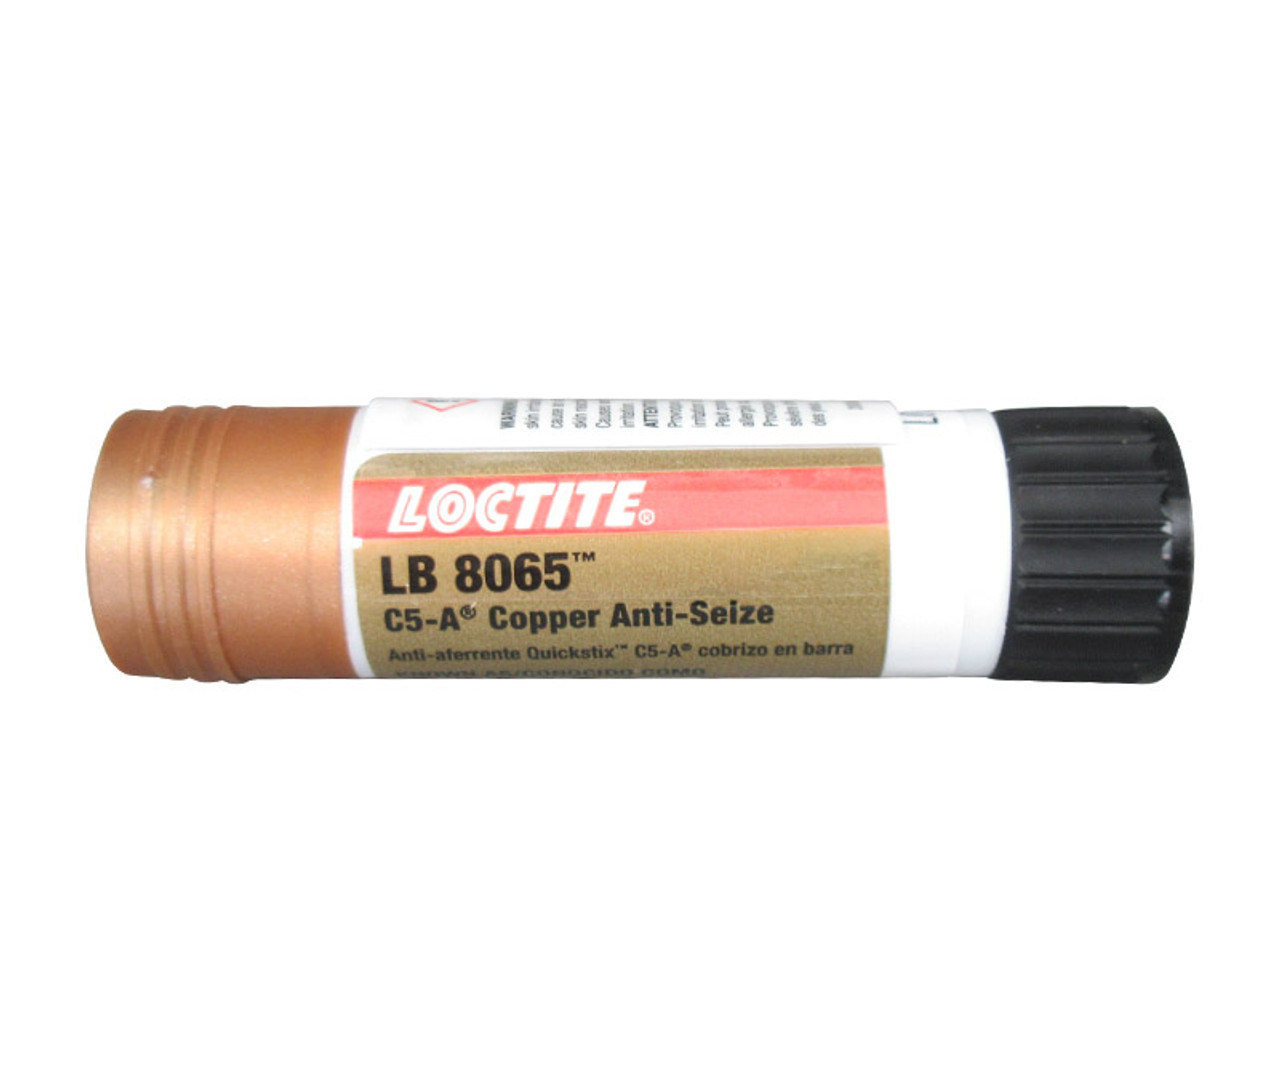 Loctite C5-A Copper Based Anti-Seize Lubricant, 12 oz Can